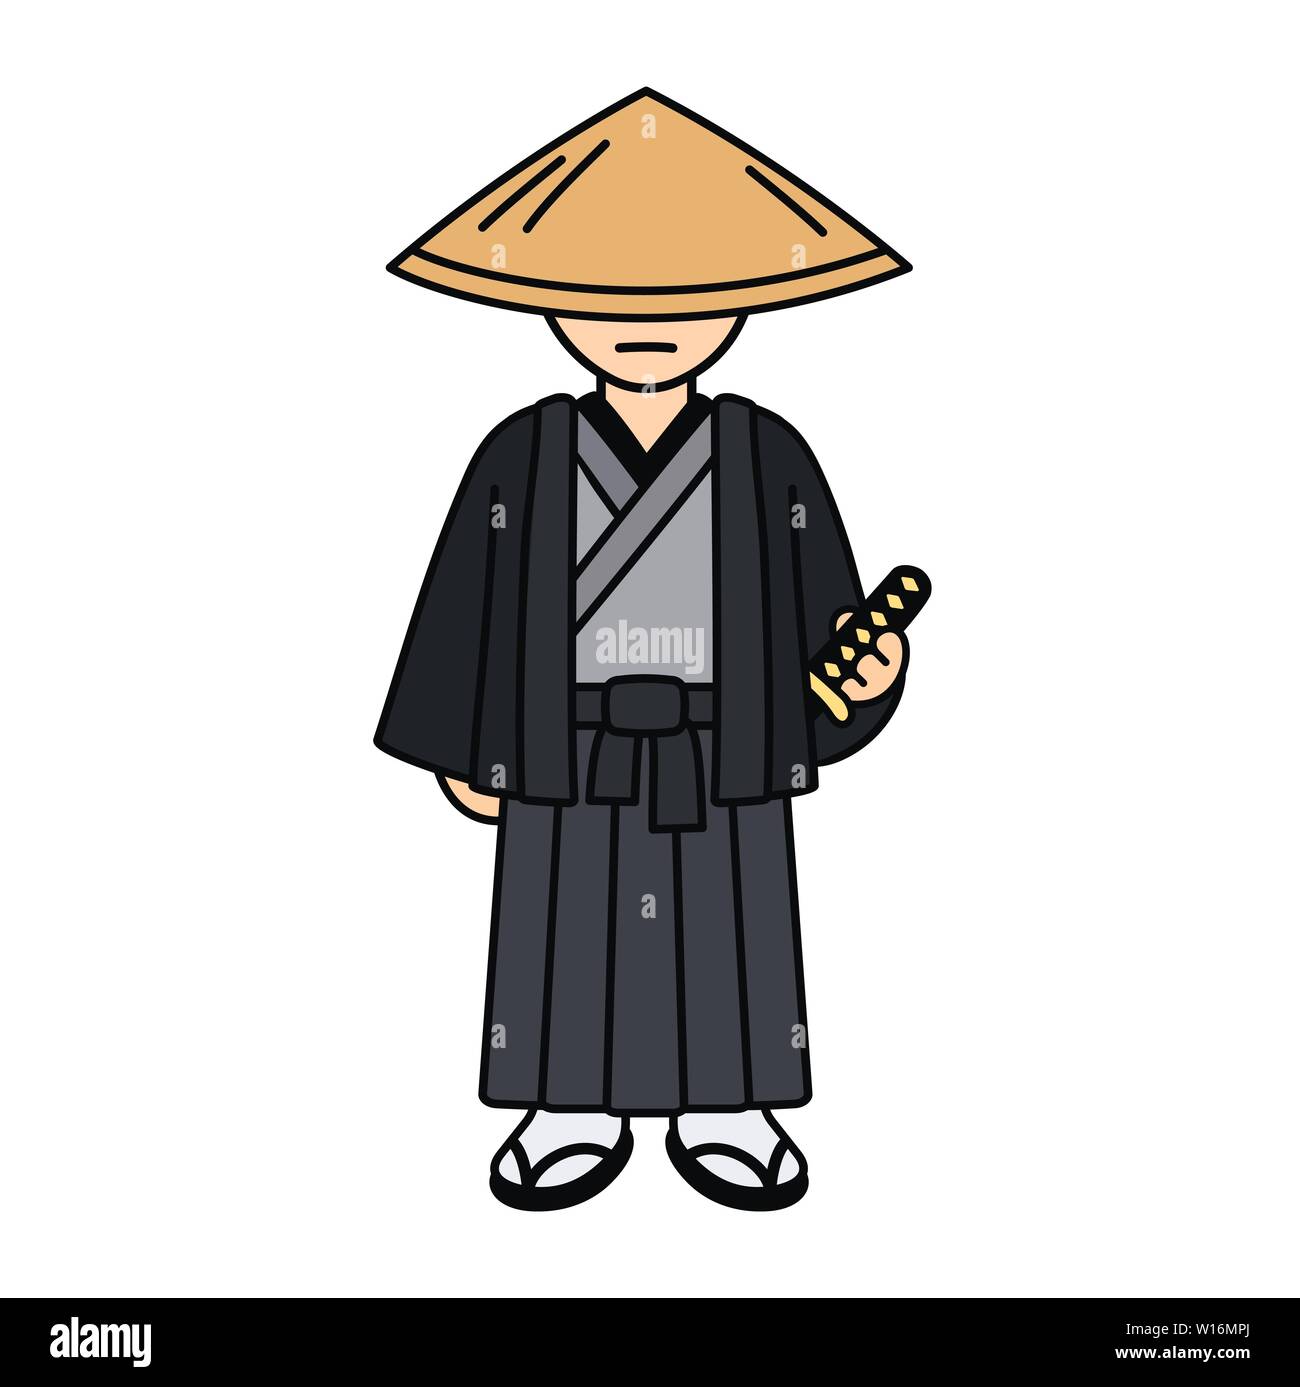 Cartoon Character samurai dibujo en kimono tradicional y sombrero de paja.  Guerrero japonés con espada katana, aislado vector clip art illustration  Imagen Vector de stock - Alamy